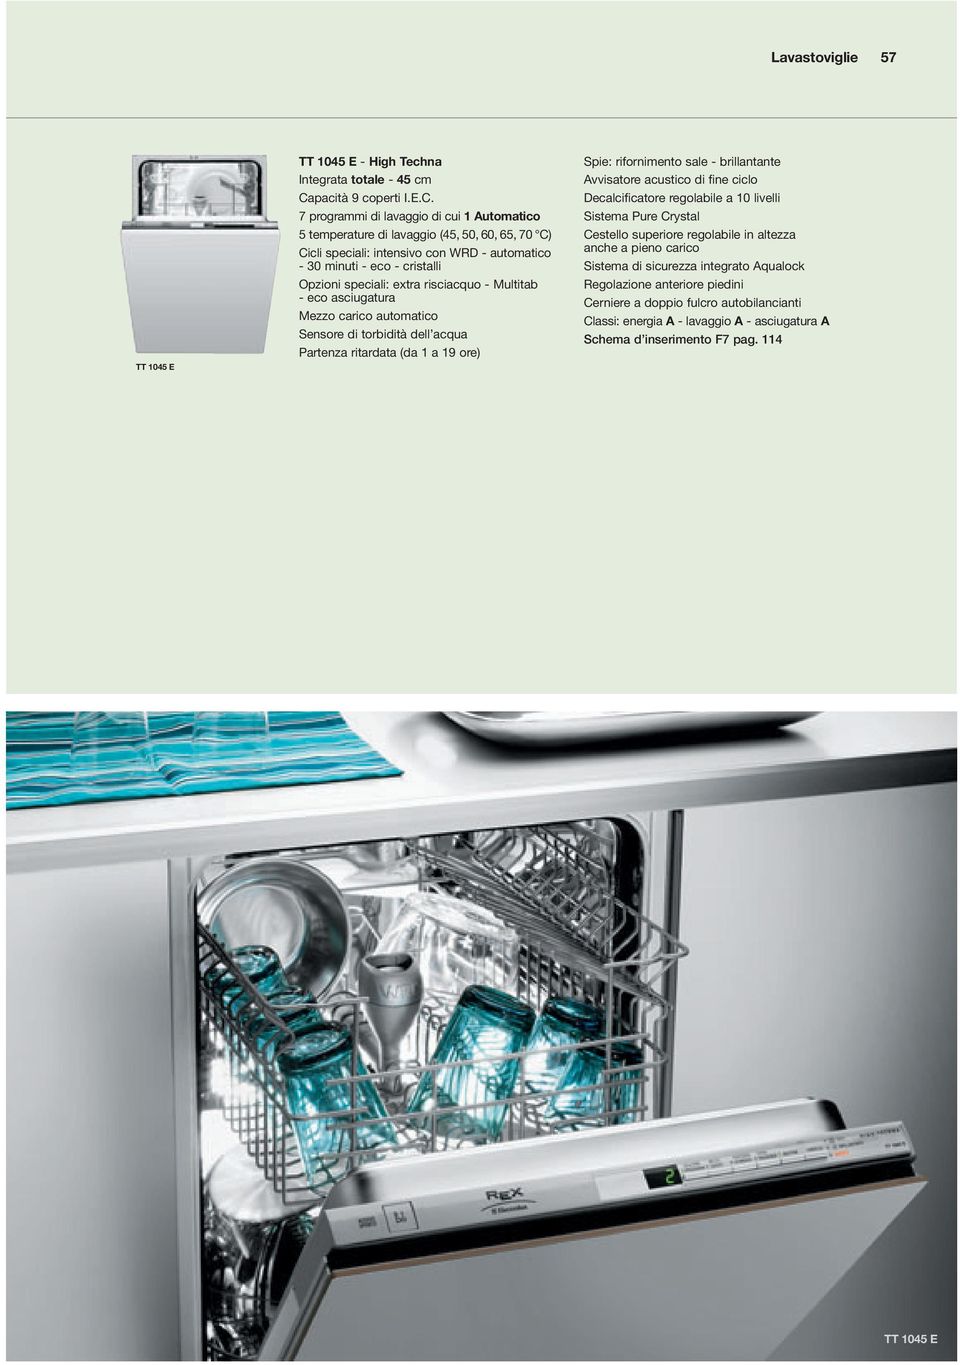 7 programmi di lavaggio di cui 1 utomatico temperature di lavaggio (4, 0, 60, 6, 70 C) Cicli speciali: intensivo con WRD -